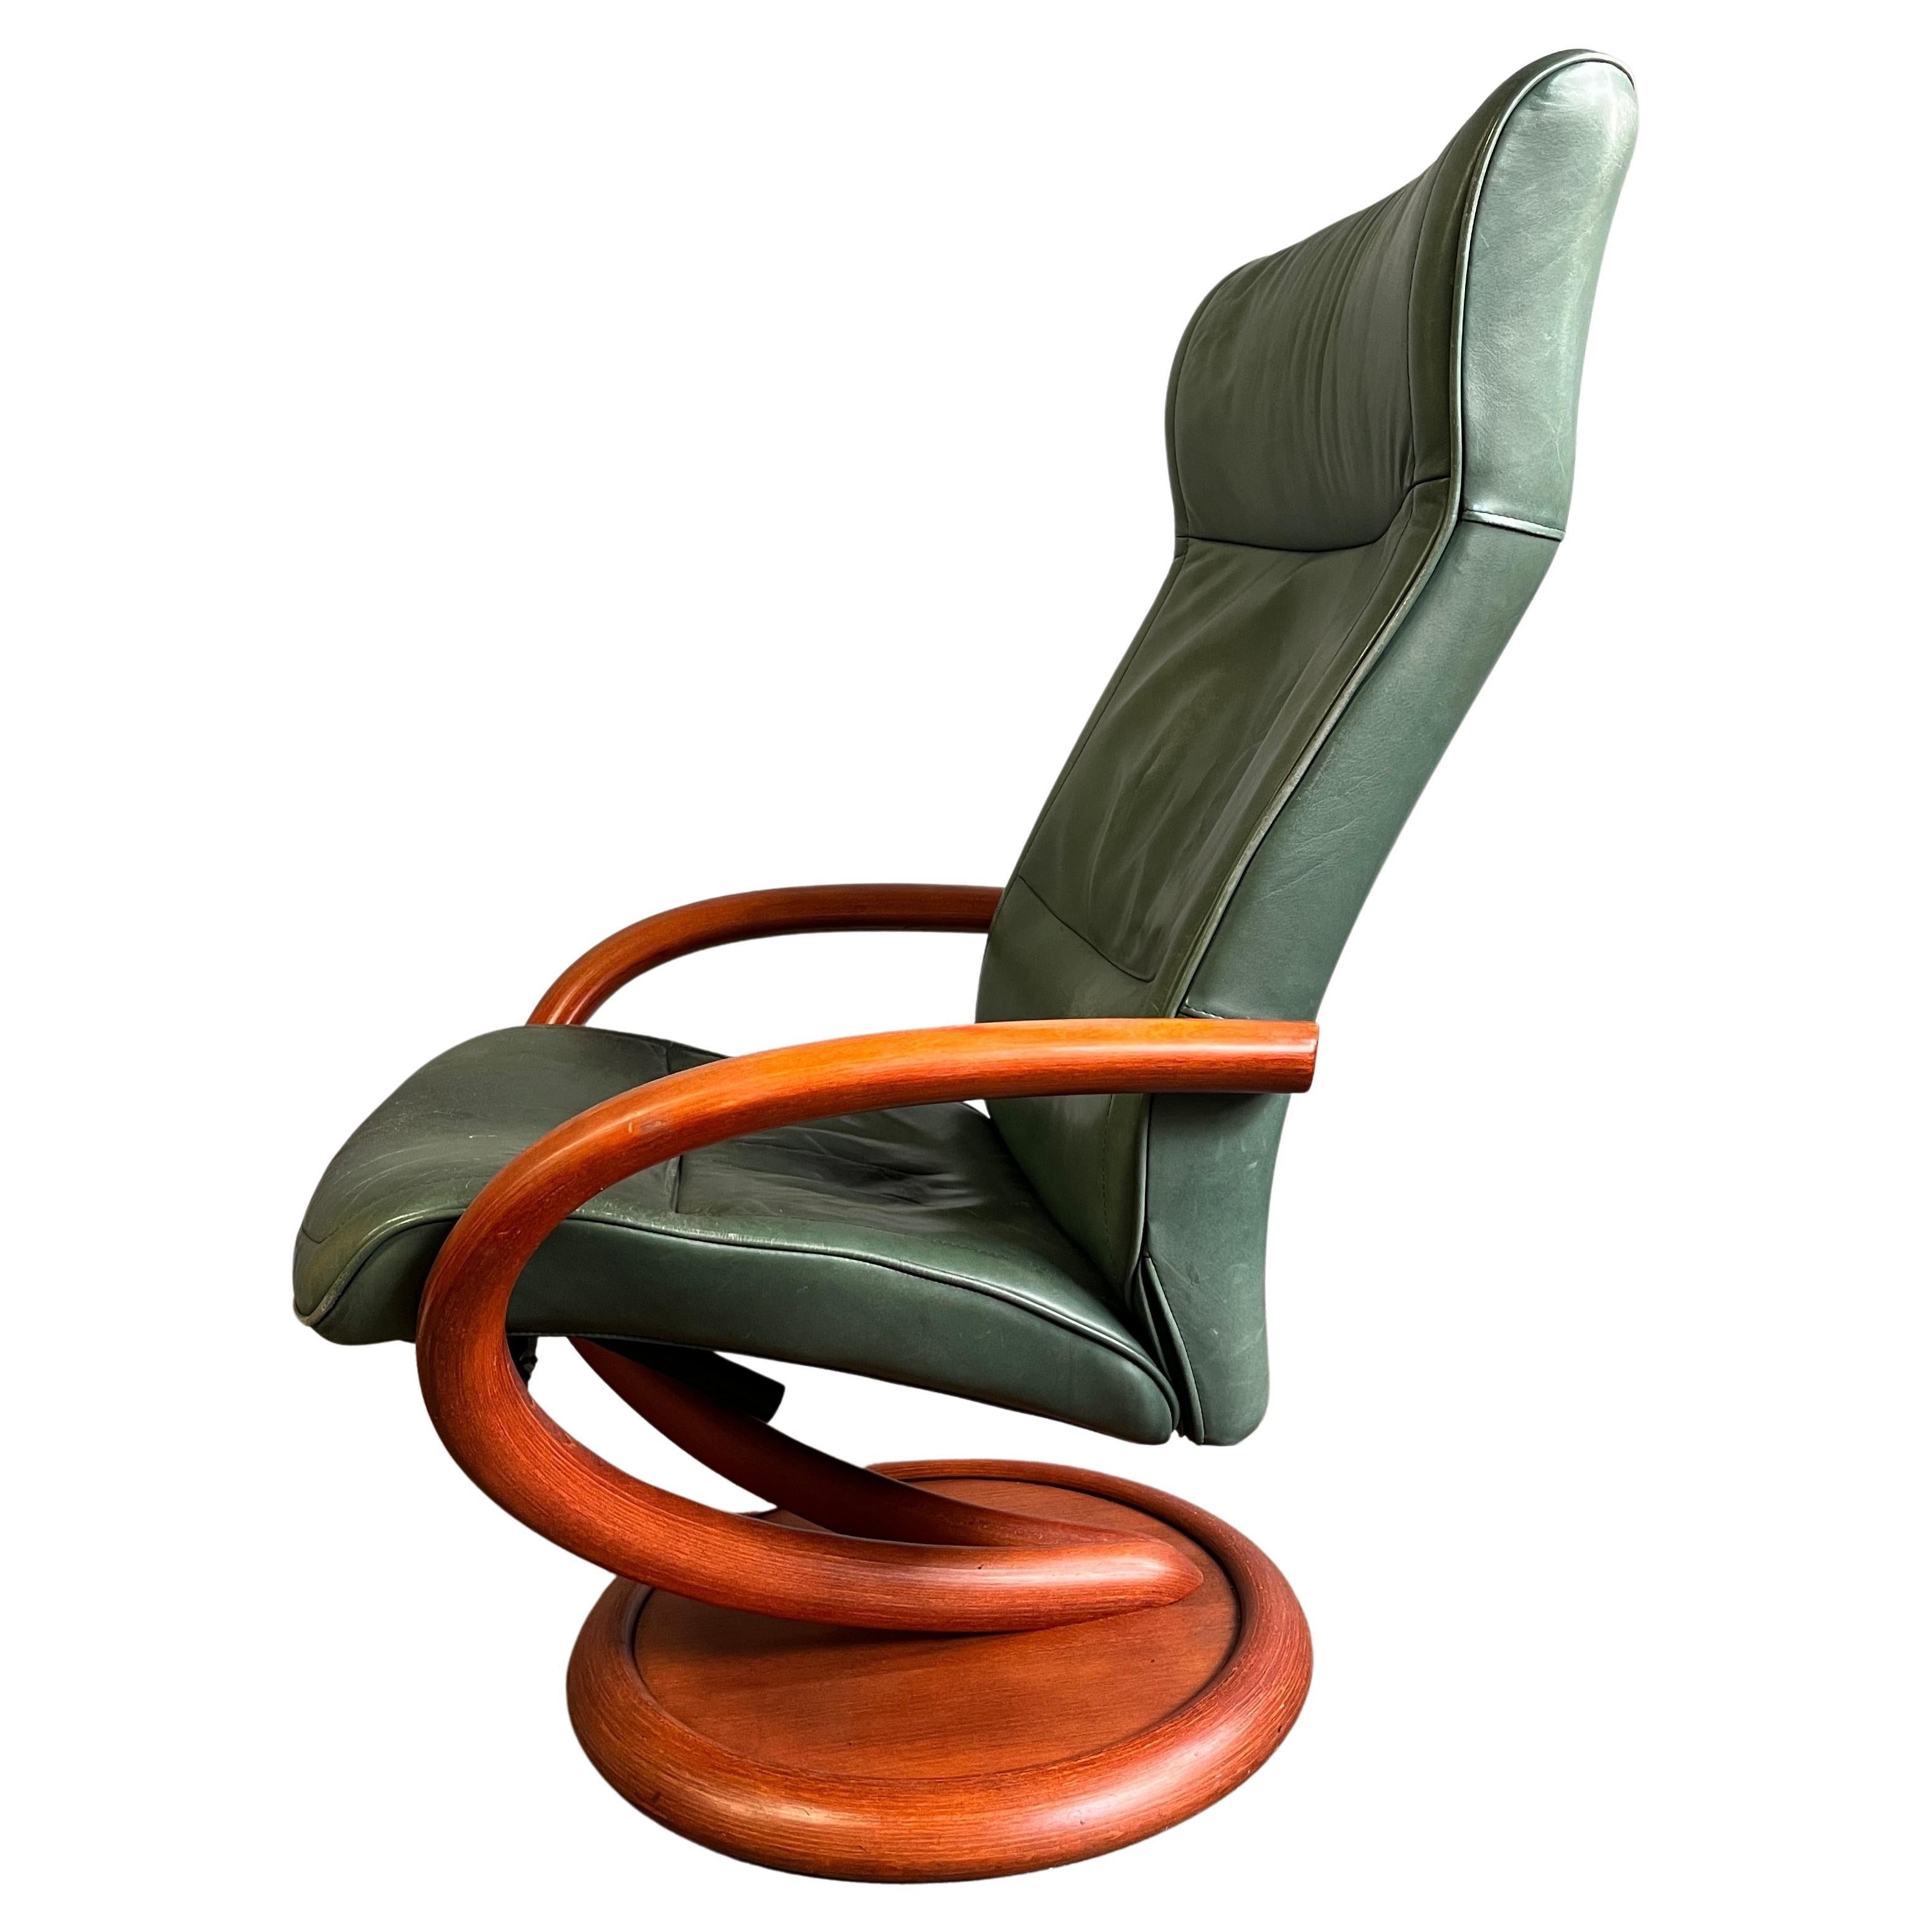 Einzigartiger freischwingender Liegesessel aus gebogenem Holz. Auch dieser Stuhl ist um 360° drehbar. 

Grünes Leder hat ein gewisses Alter. Lassen Sie es so, wie es ist, oder stellen Sie es nach Ihren Wünschen um. 